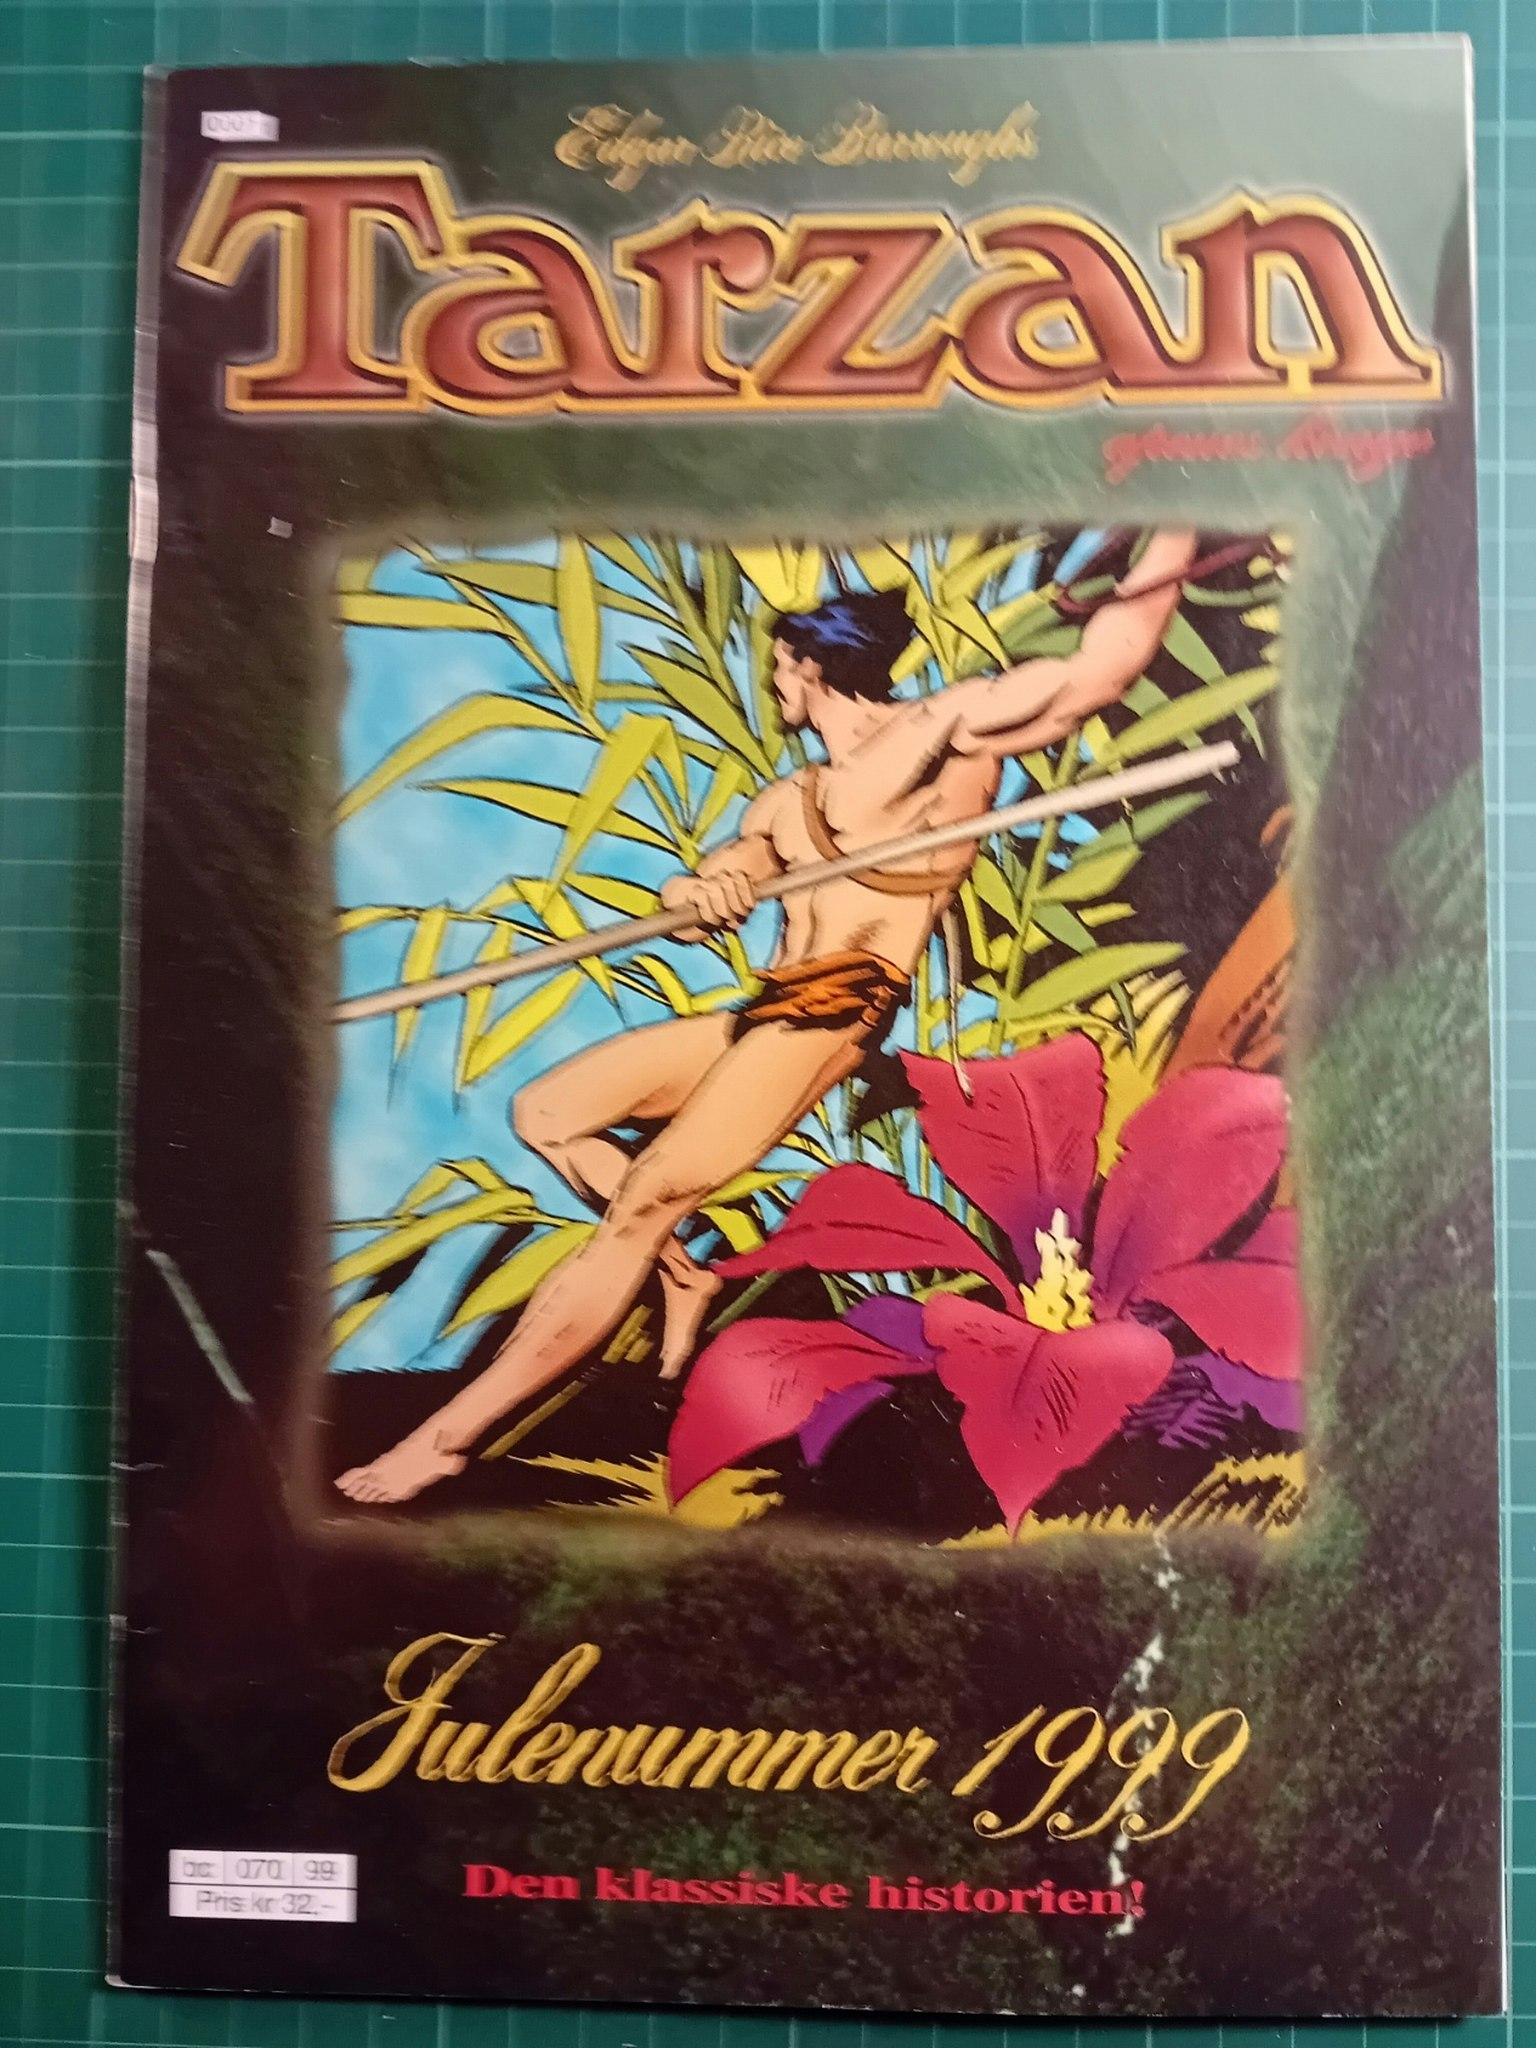 Tarzan Julen 1999